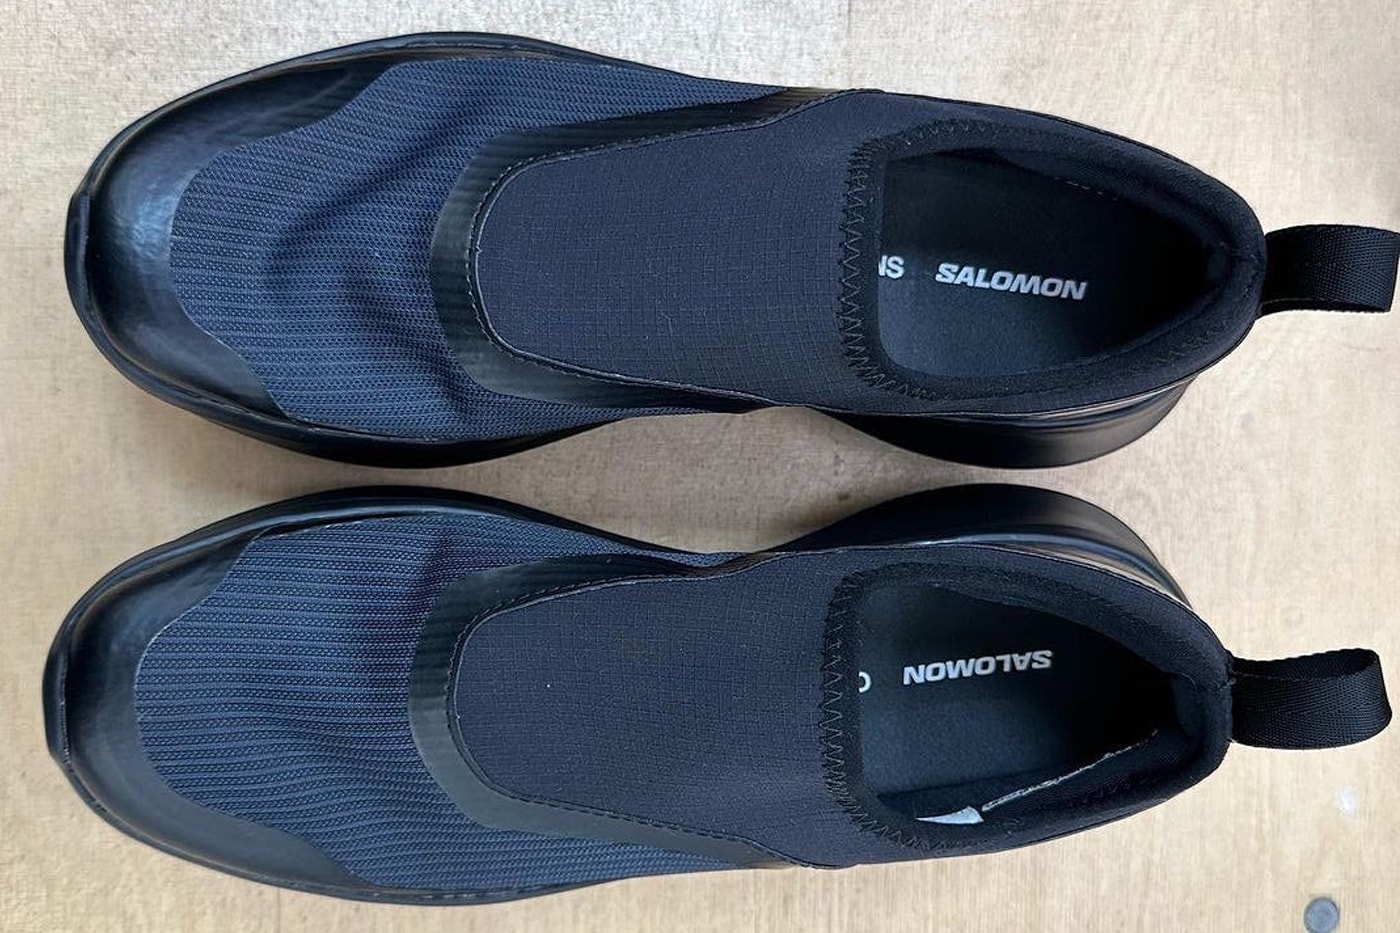 COMME des GARÇONS Salomon footwear shoes sneaker white black